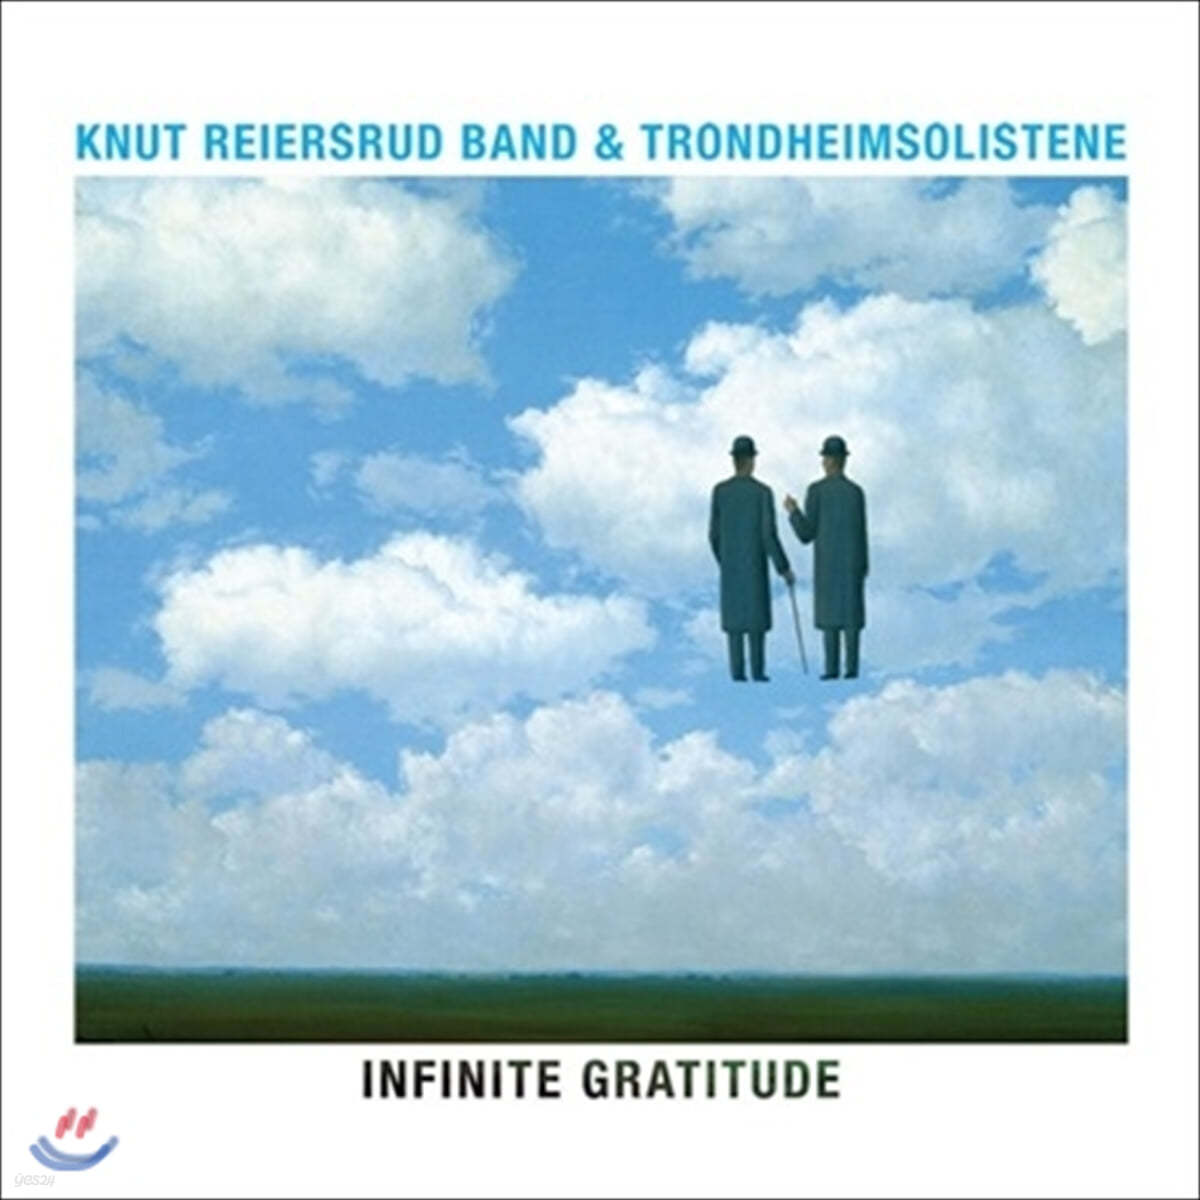 재즈로 듣는 브람스와 슈베르트 (Knut Reiersrud Band / Trondheimsolistene - Infinite Gratitude) [LP]